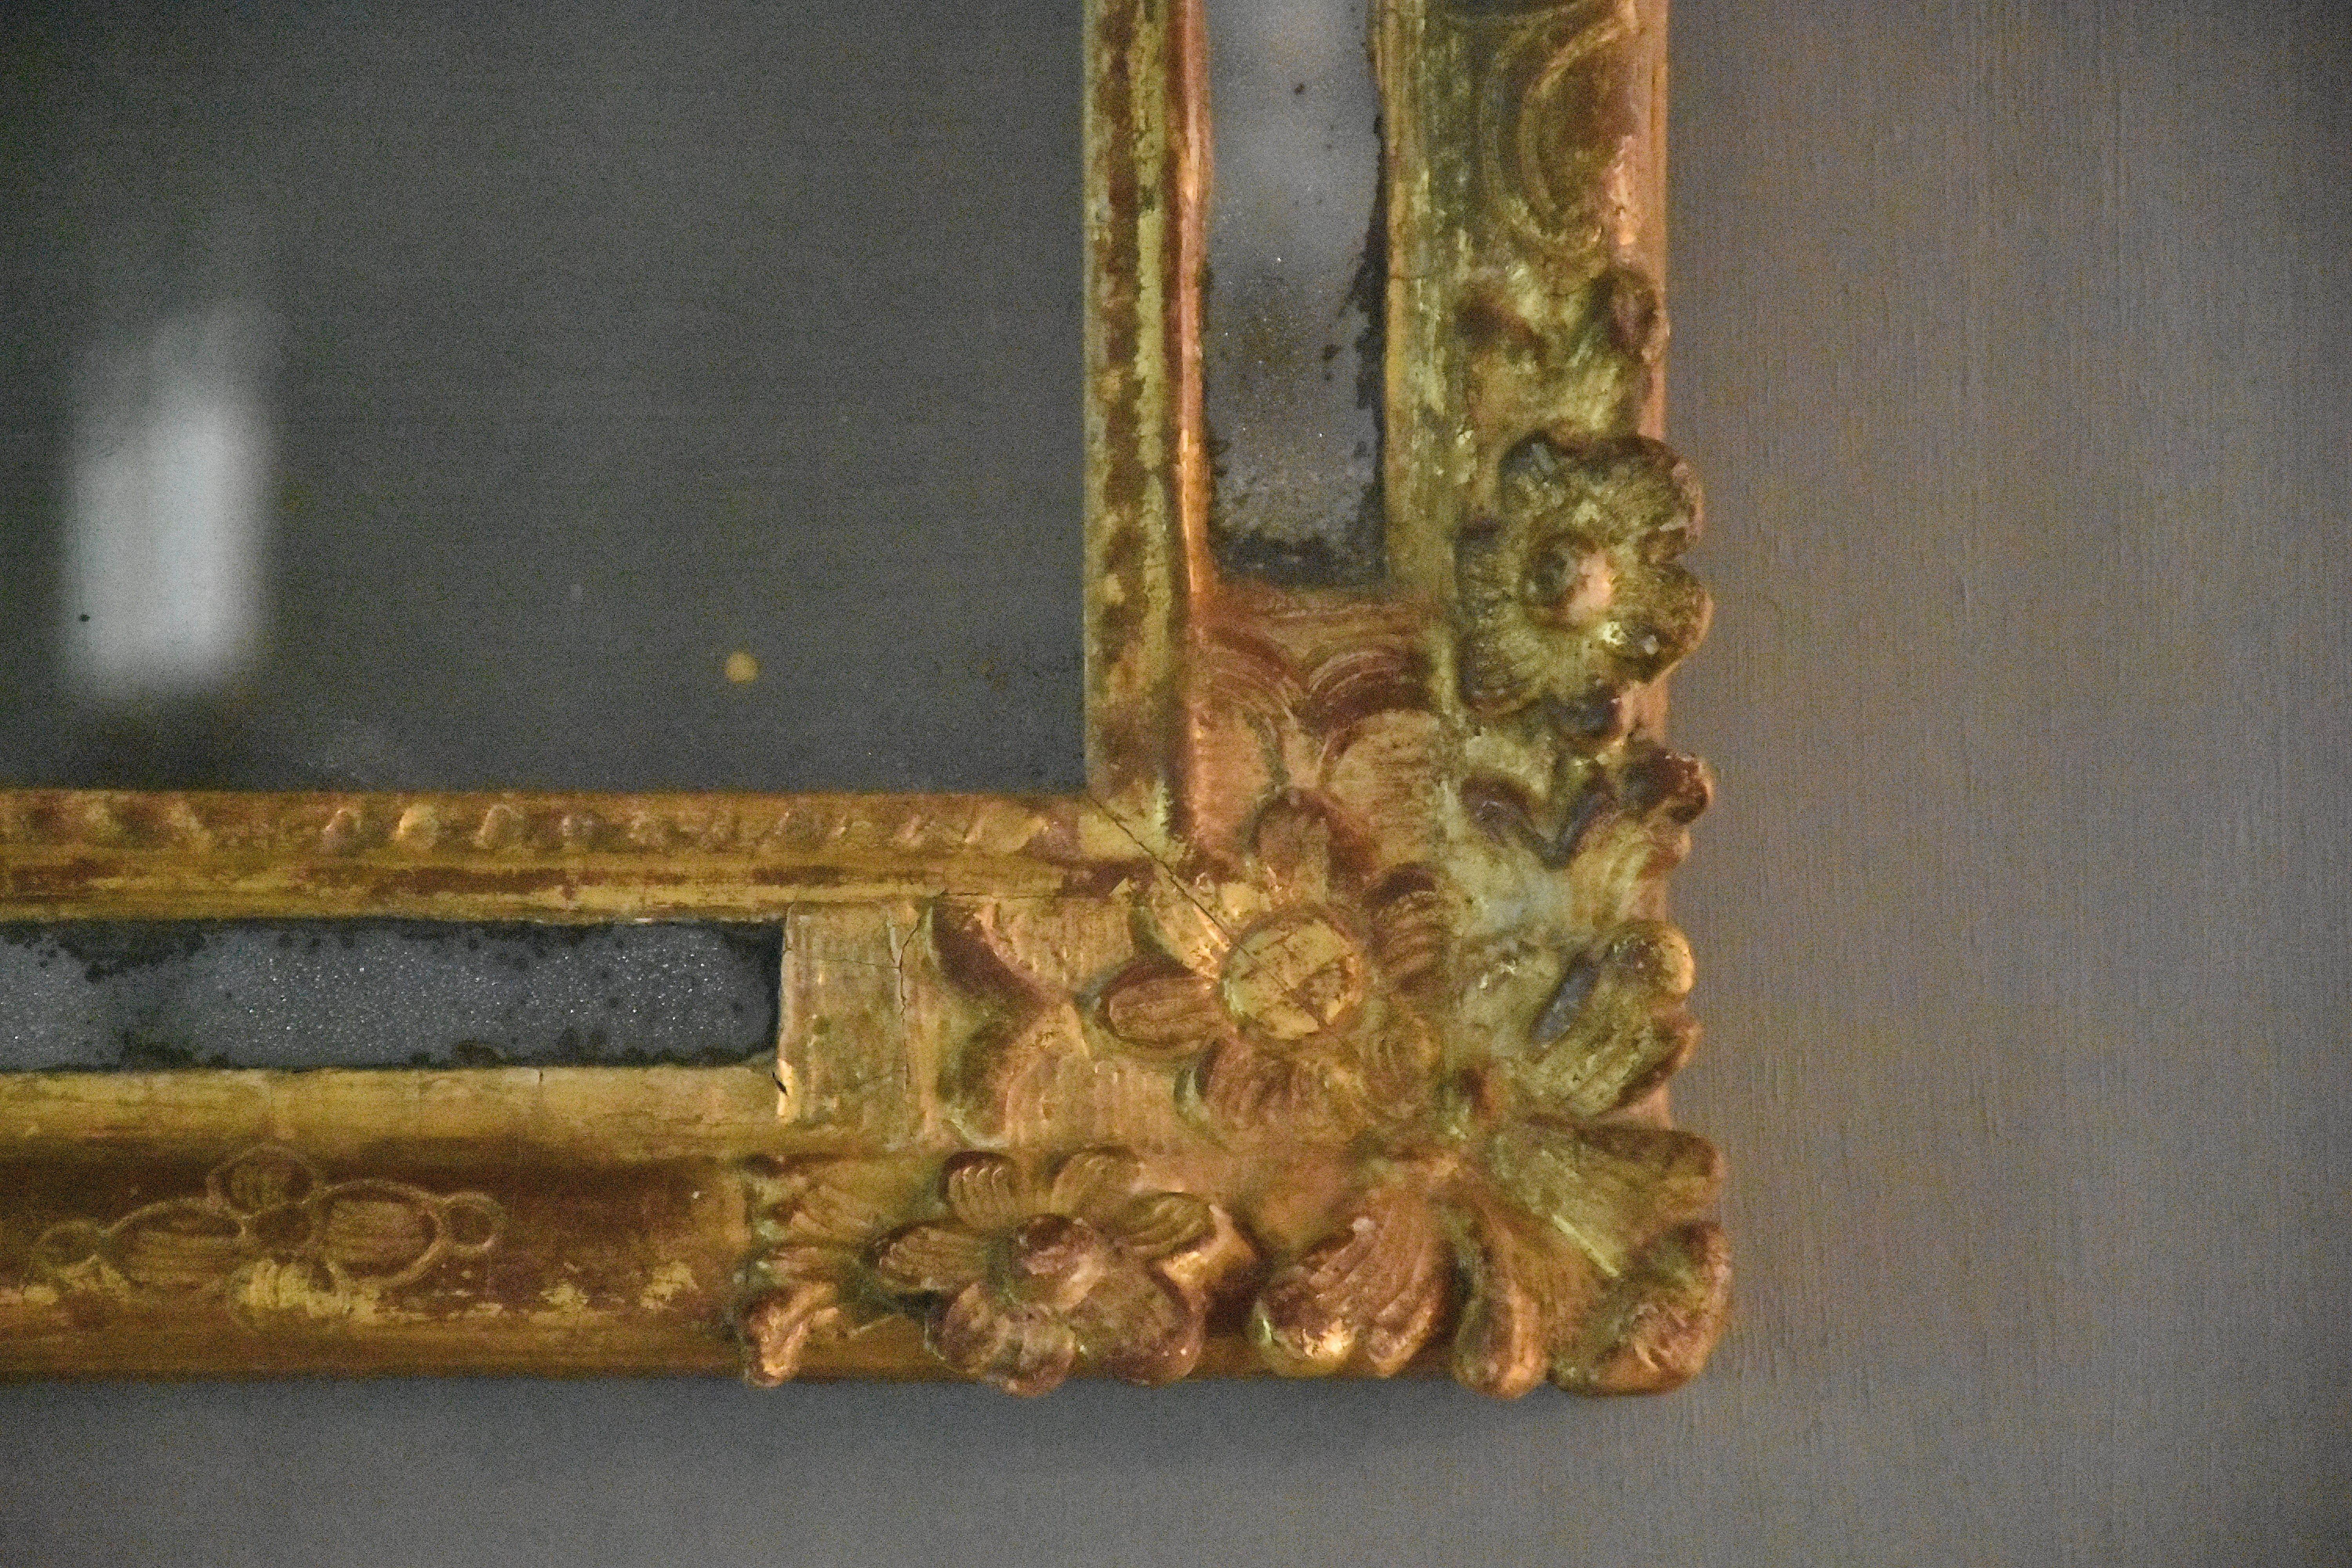 18th century French mirror, epoque Louis XIV